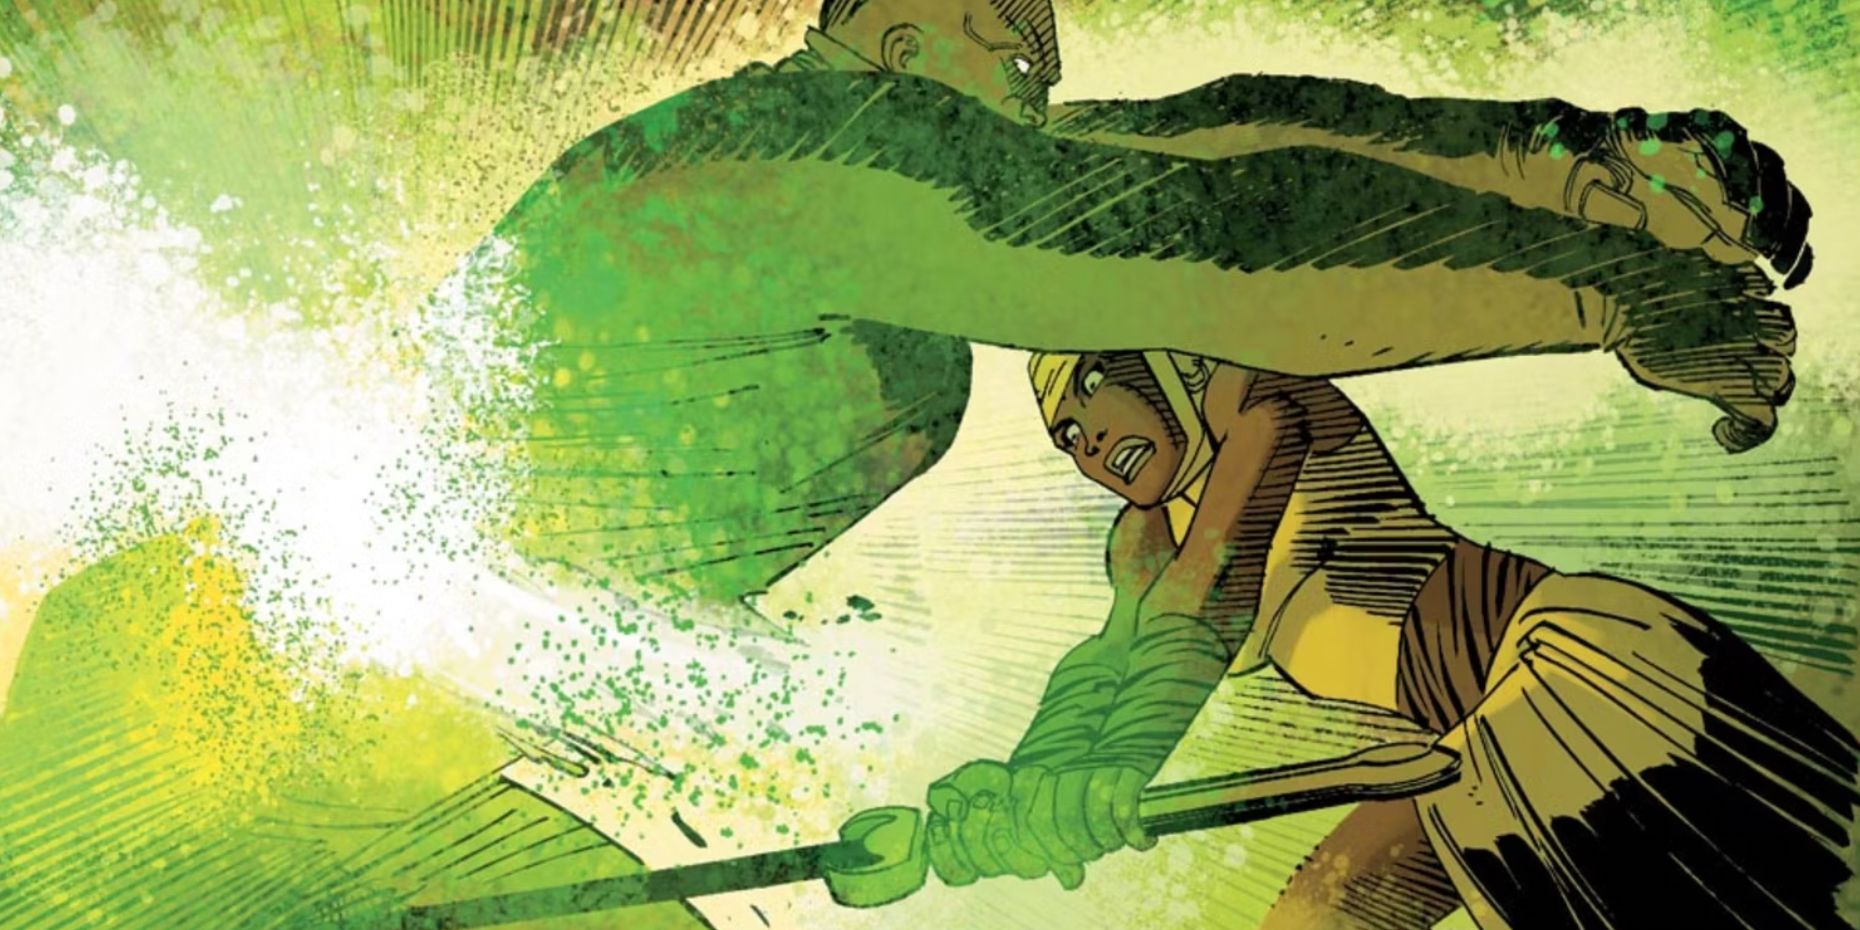 Shuri kills Radioactive Man with the Ebony Blade in Marvel comics